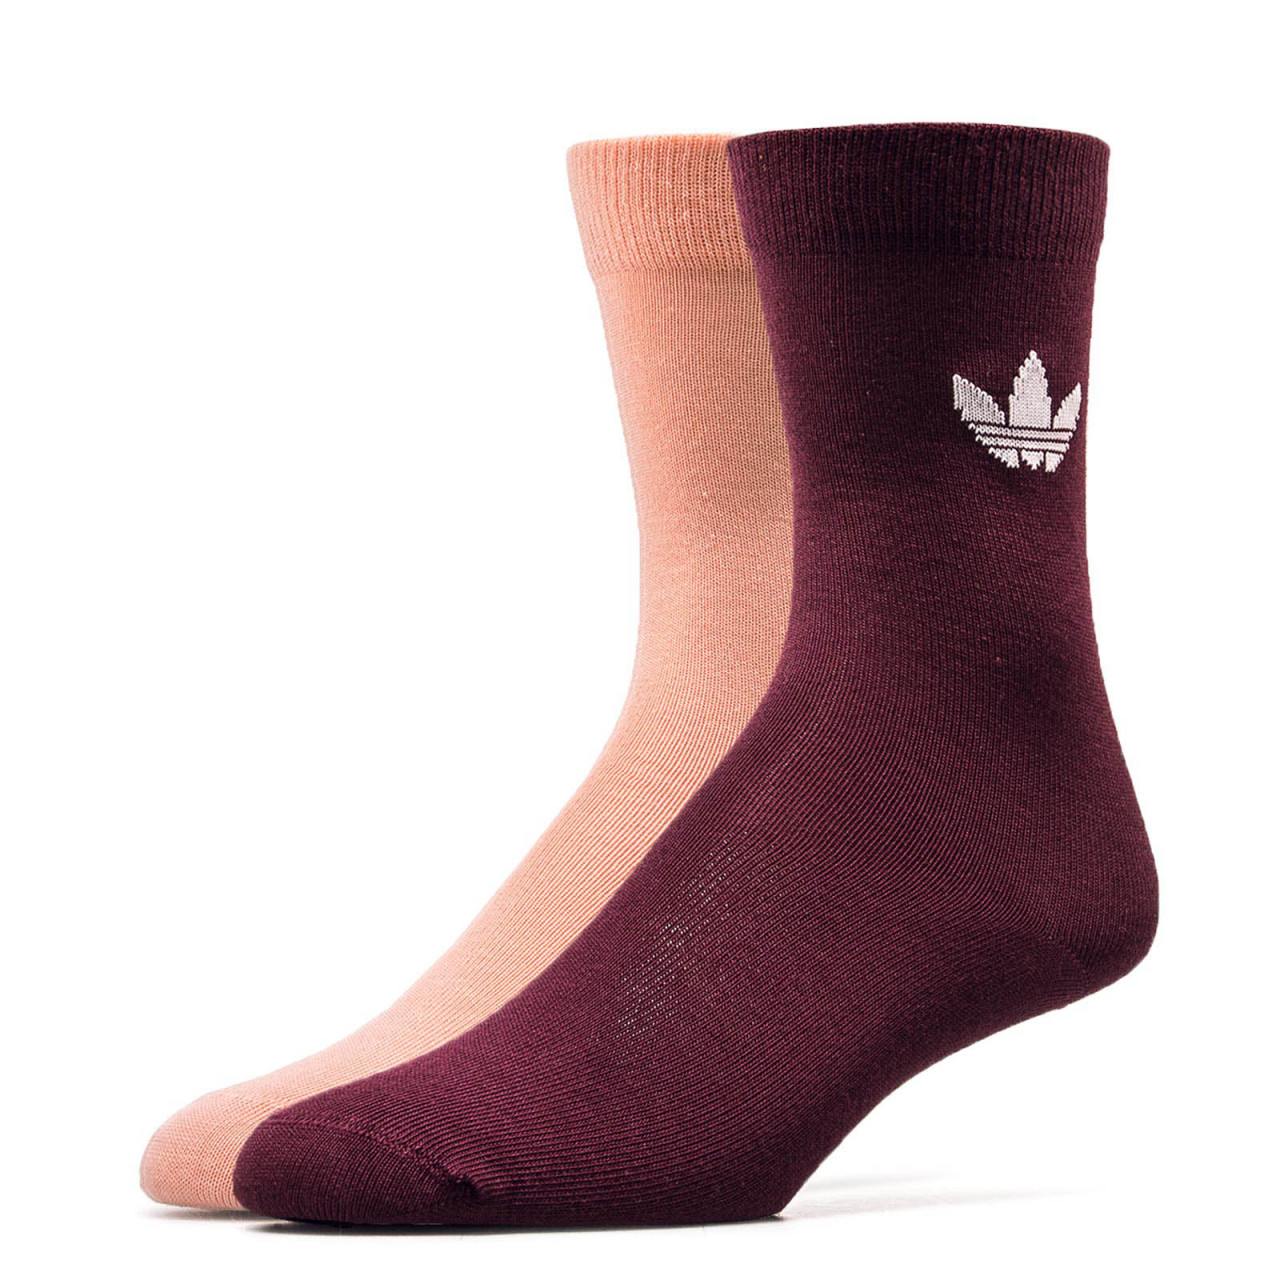 Adidas Socks 2Pk Thin Tref Bordo Rose